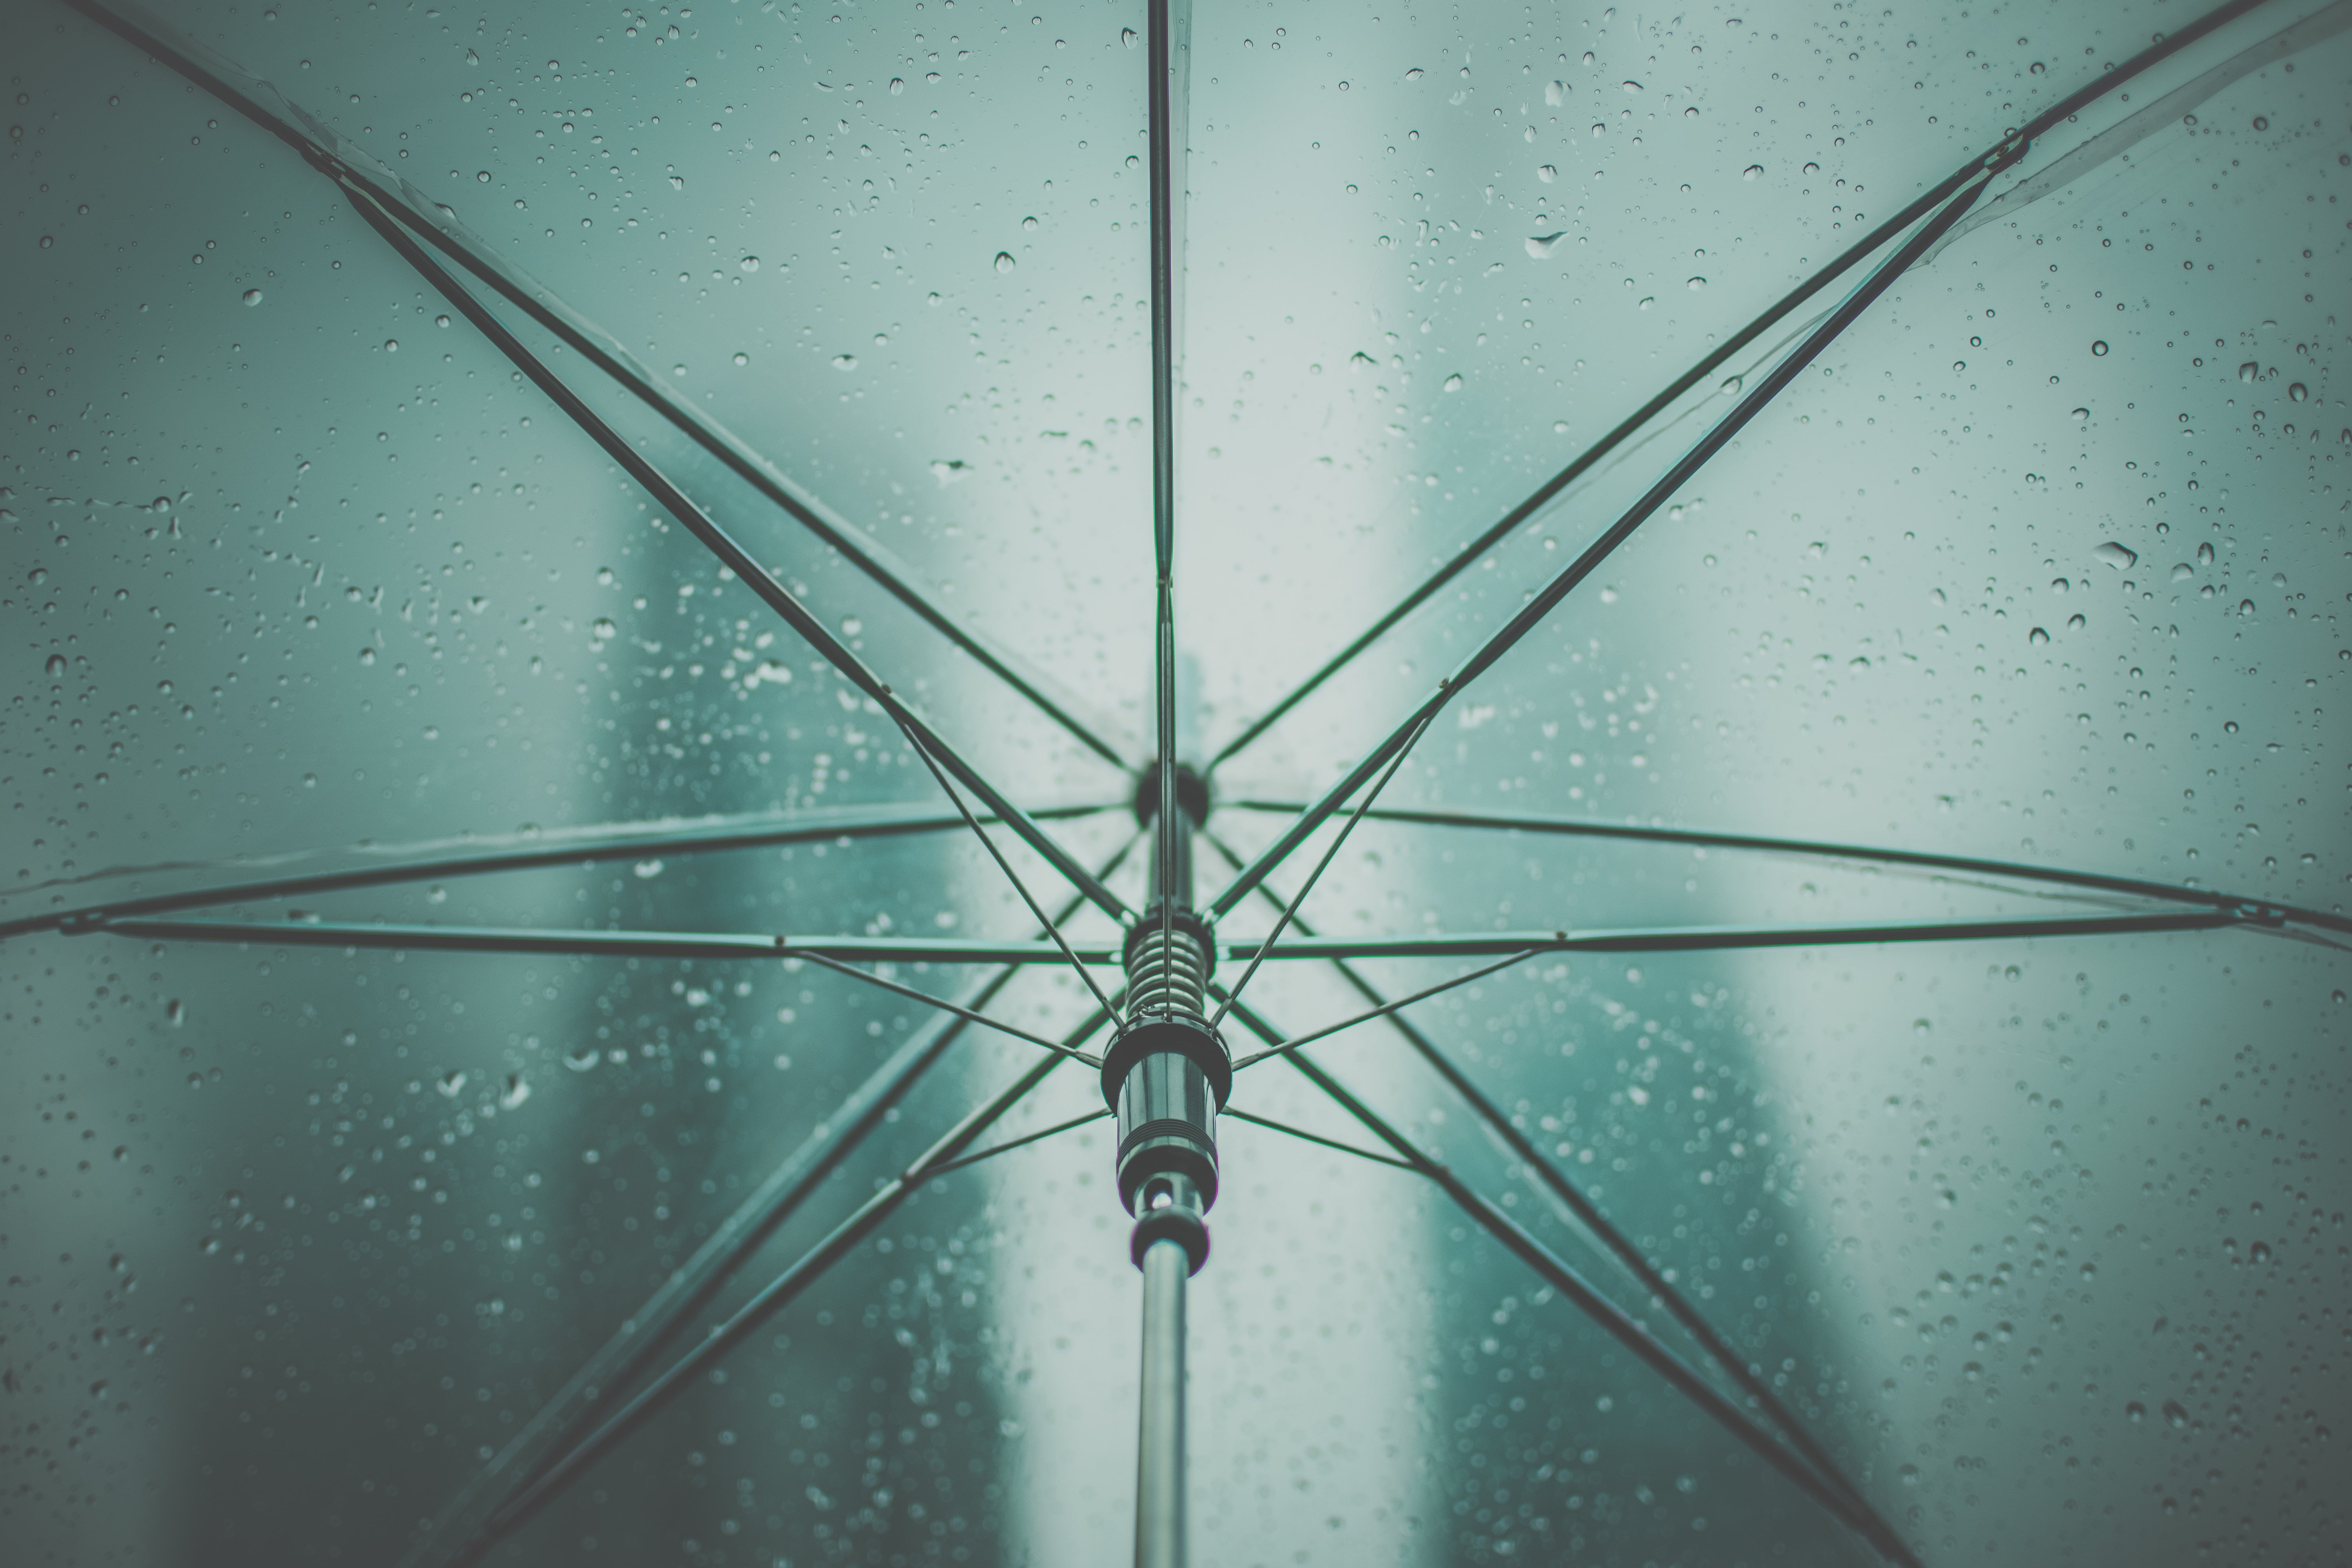 transparent umbrella, rain, drops, abstract, backgrounds, close-up